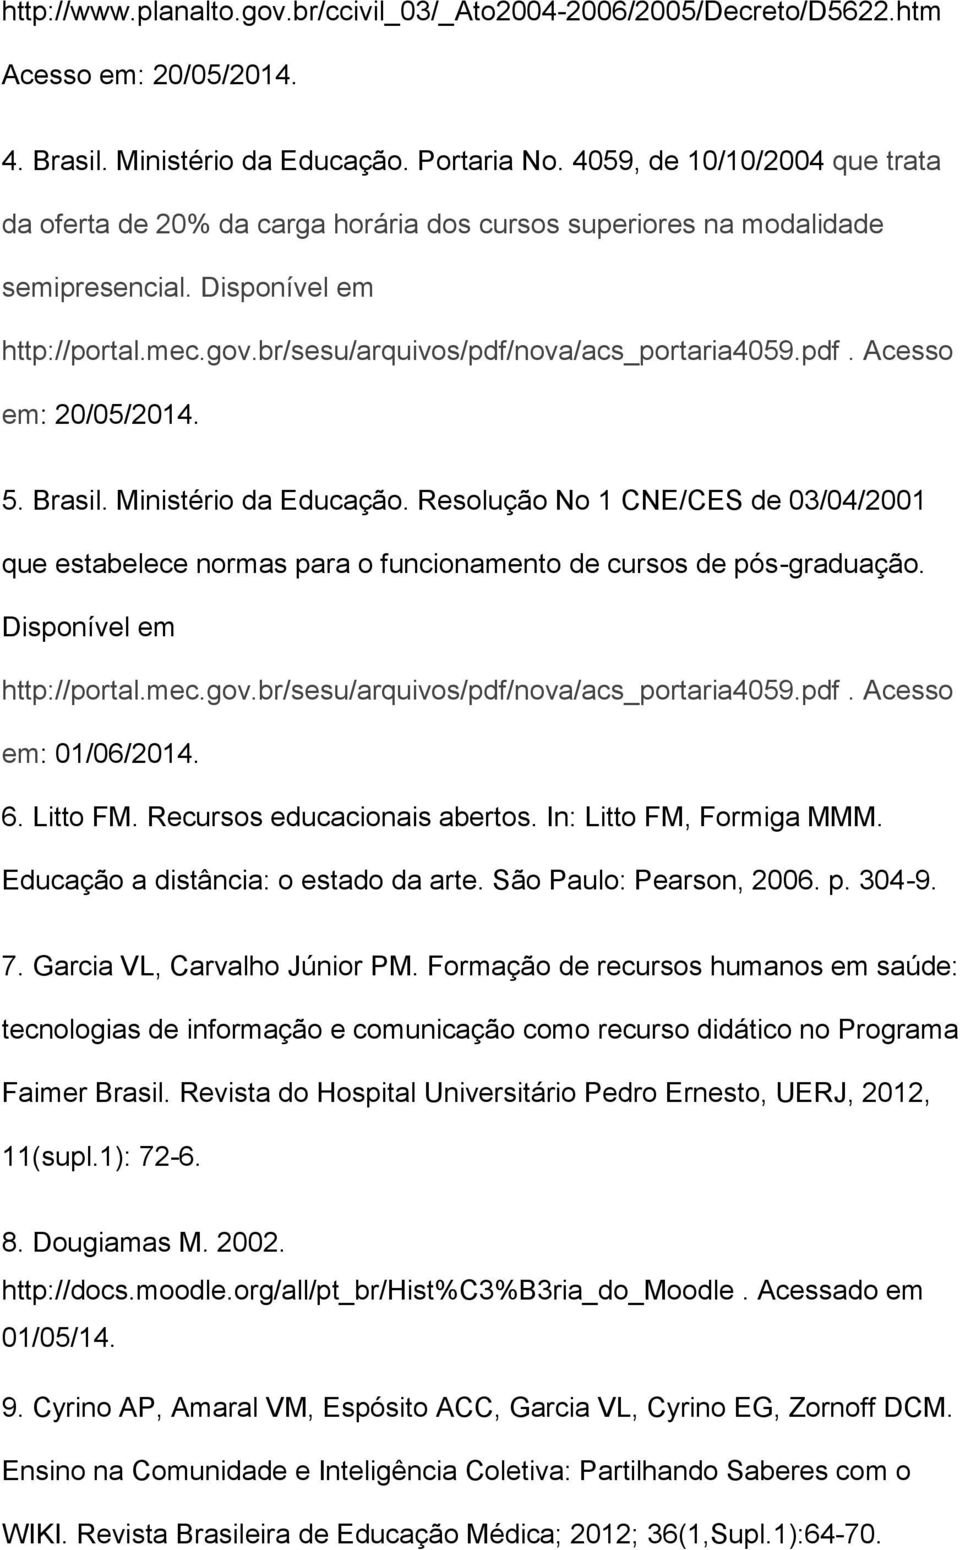 5. Brasil. Ministério da Educação. Resolução No 1 CNE/CES de 03/04/2001 que estabelece normas para o funcionamento de cursos de pós-graduação. Disponível em http://portal.mec.gov.